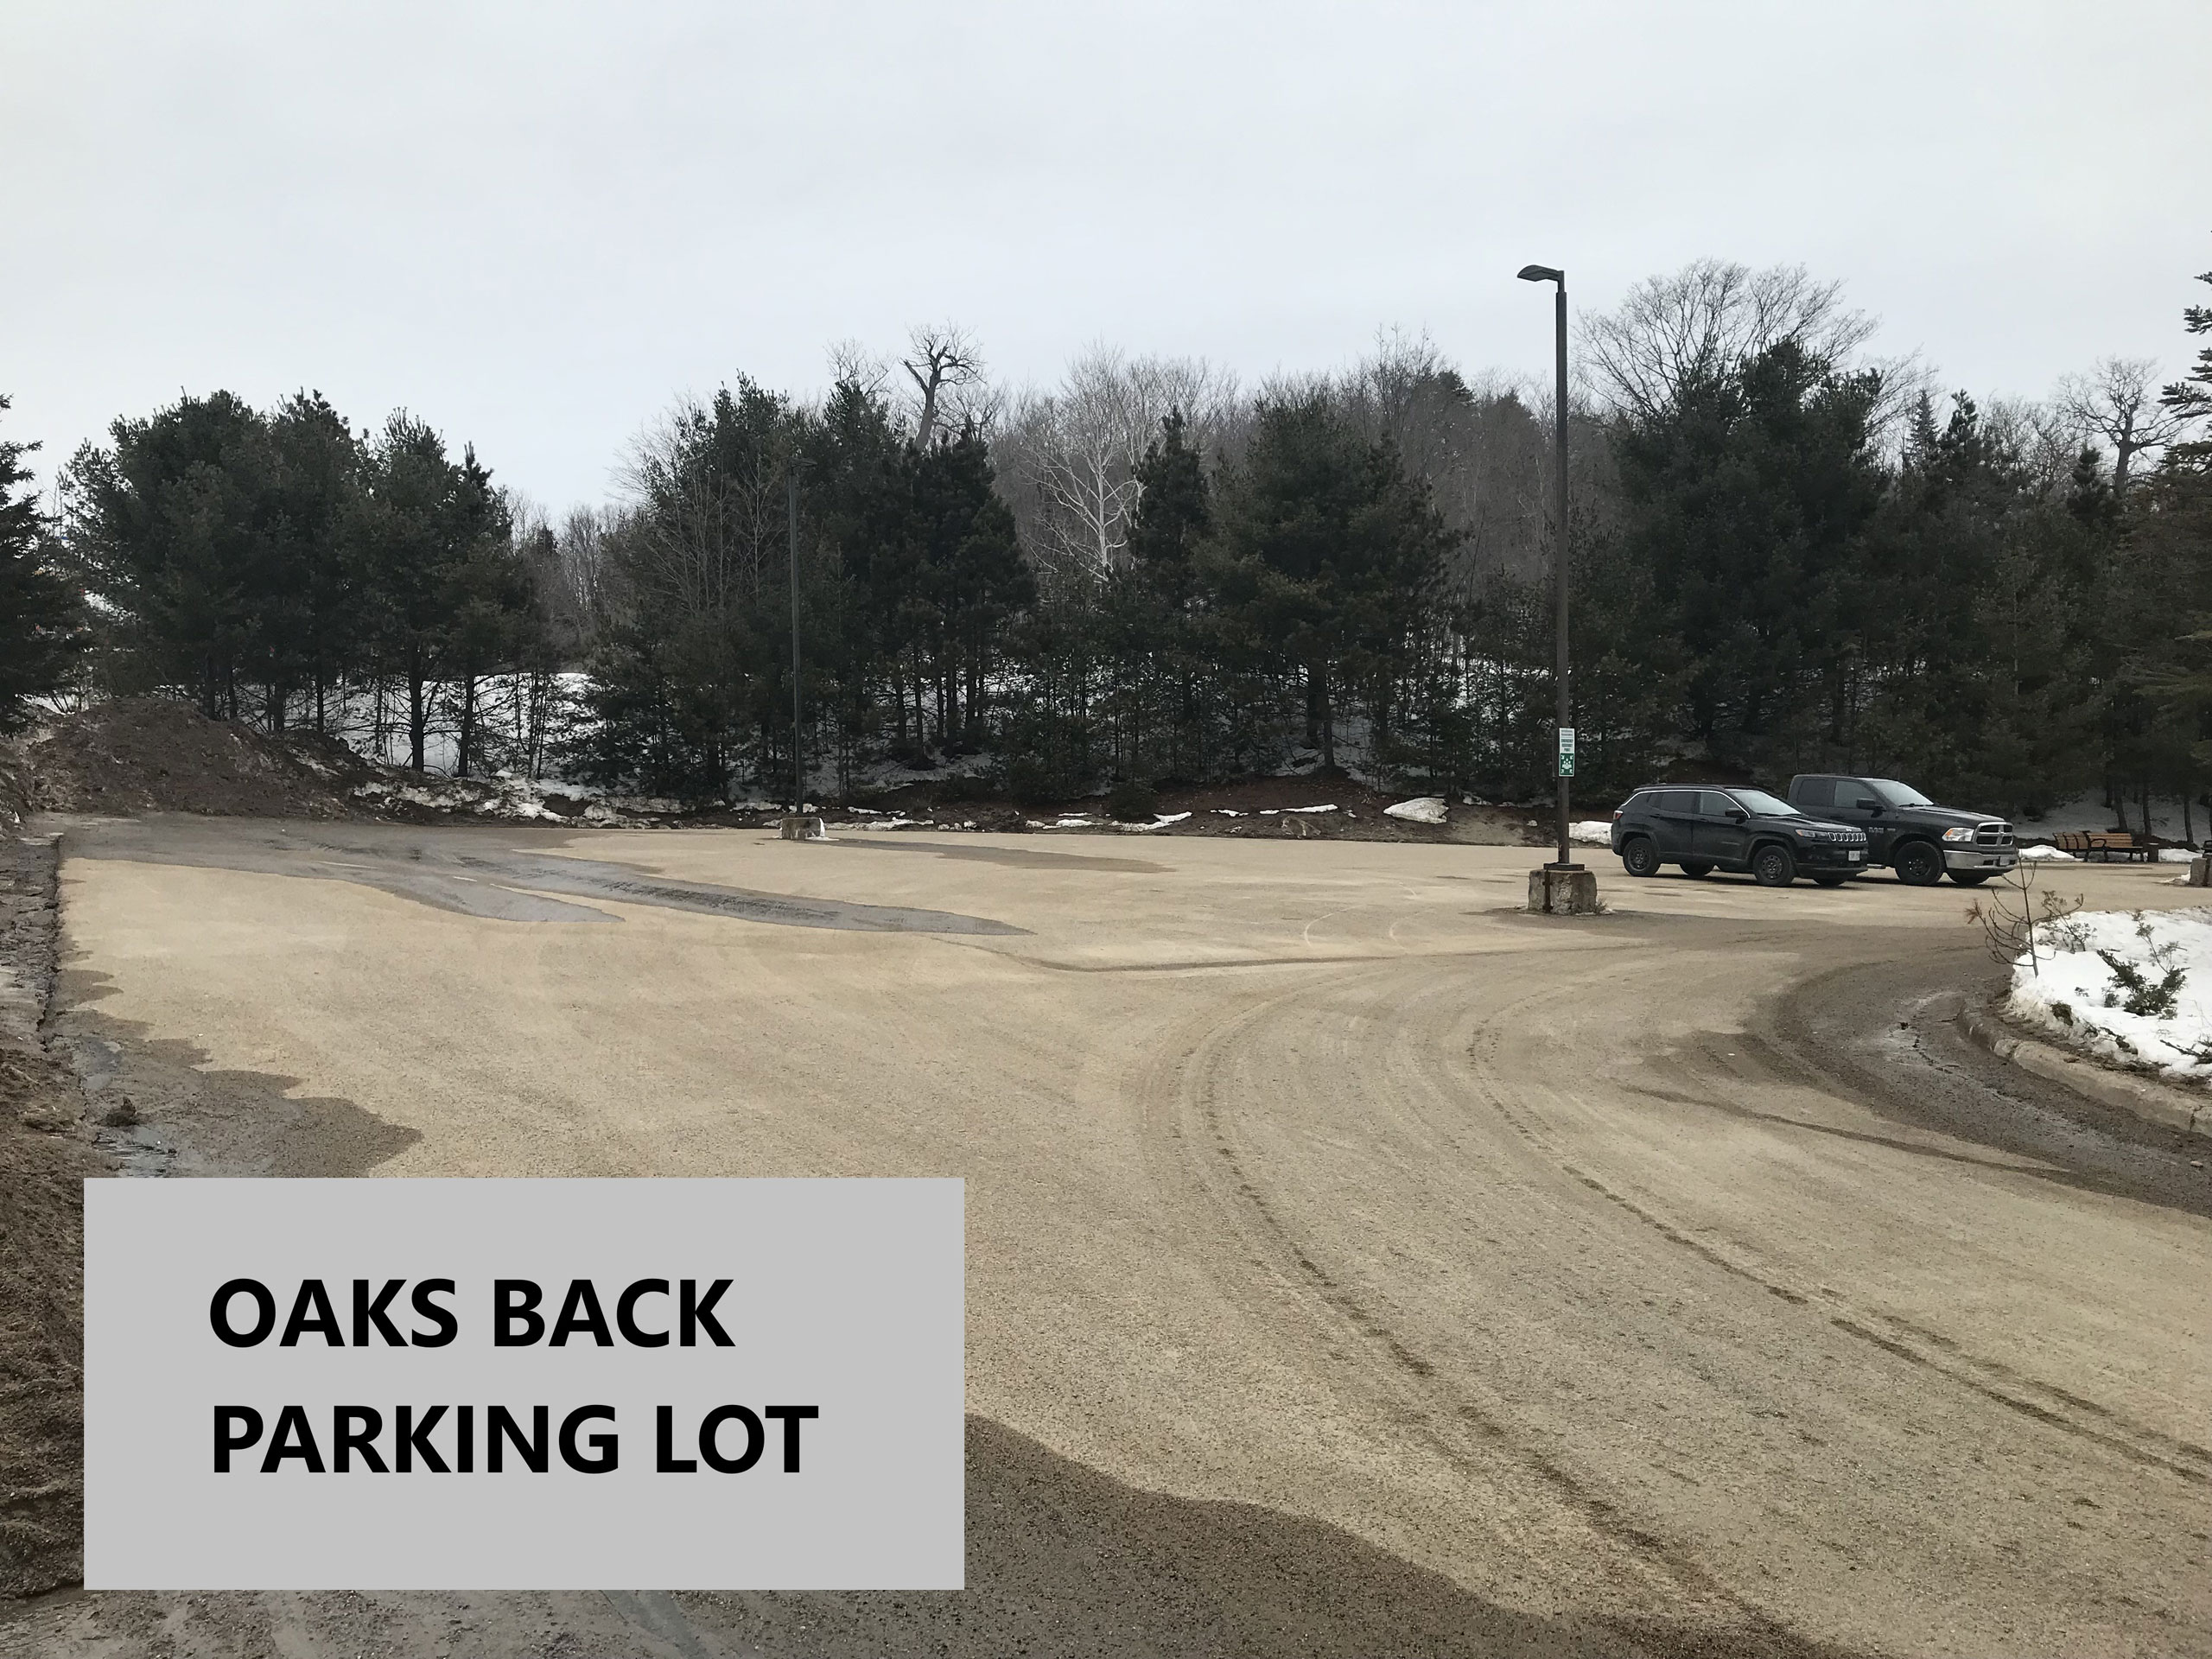 Oaks parking back